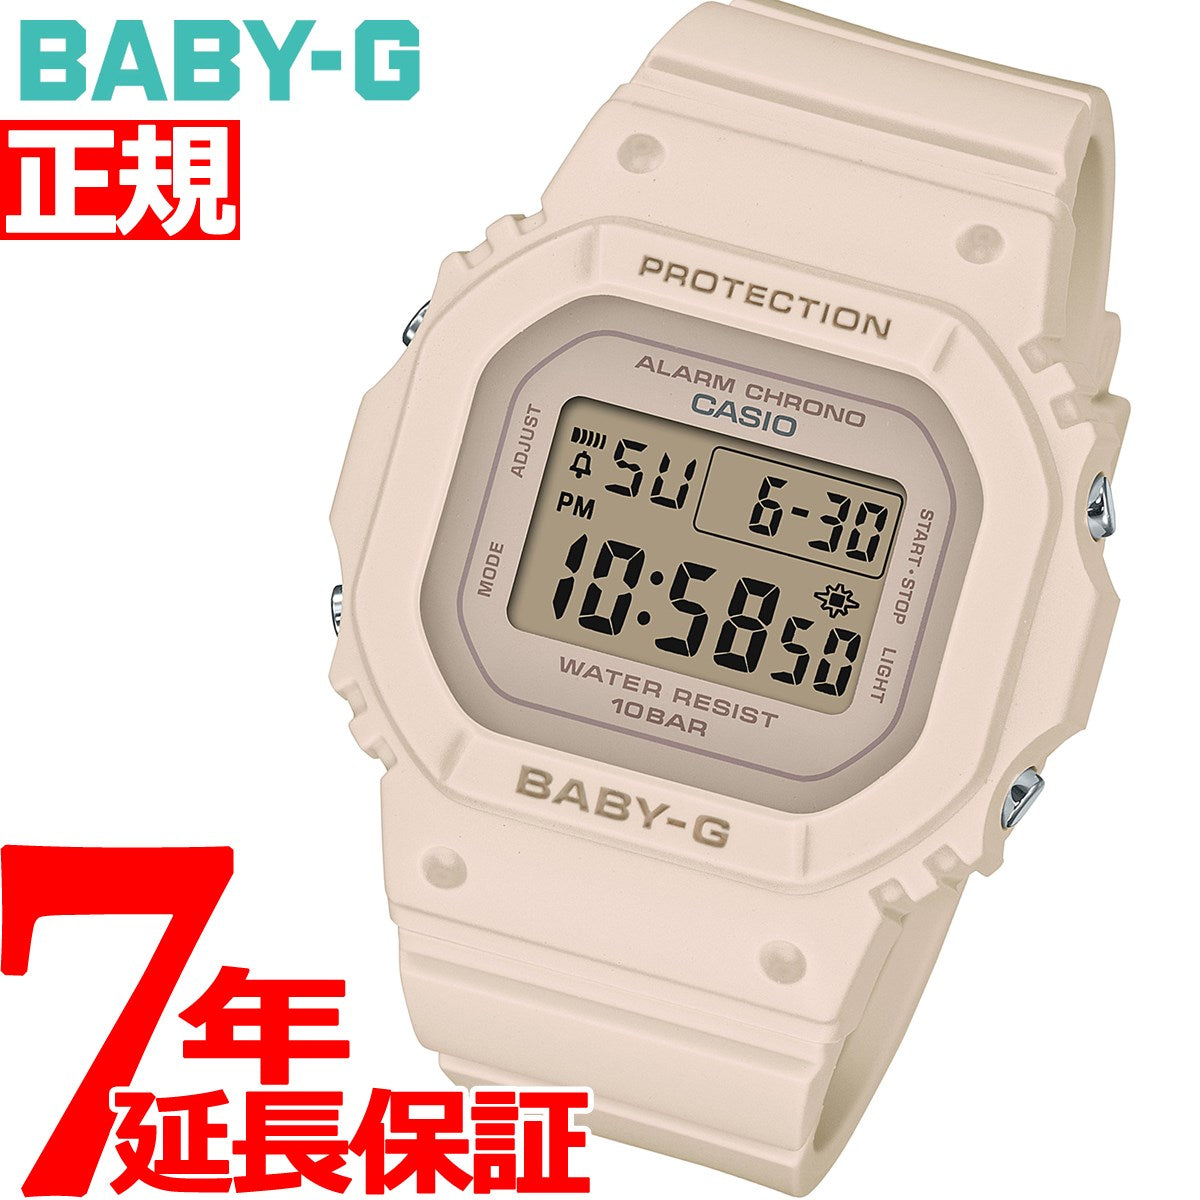 Baby-G CASIO Baby-G 腕時計 レディース bgd-565-4dr カシオ ベビーG